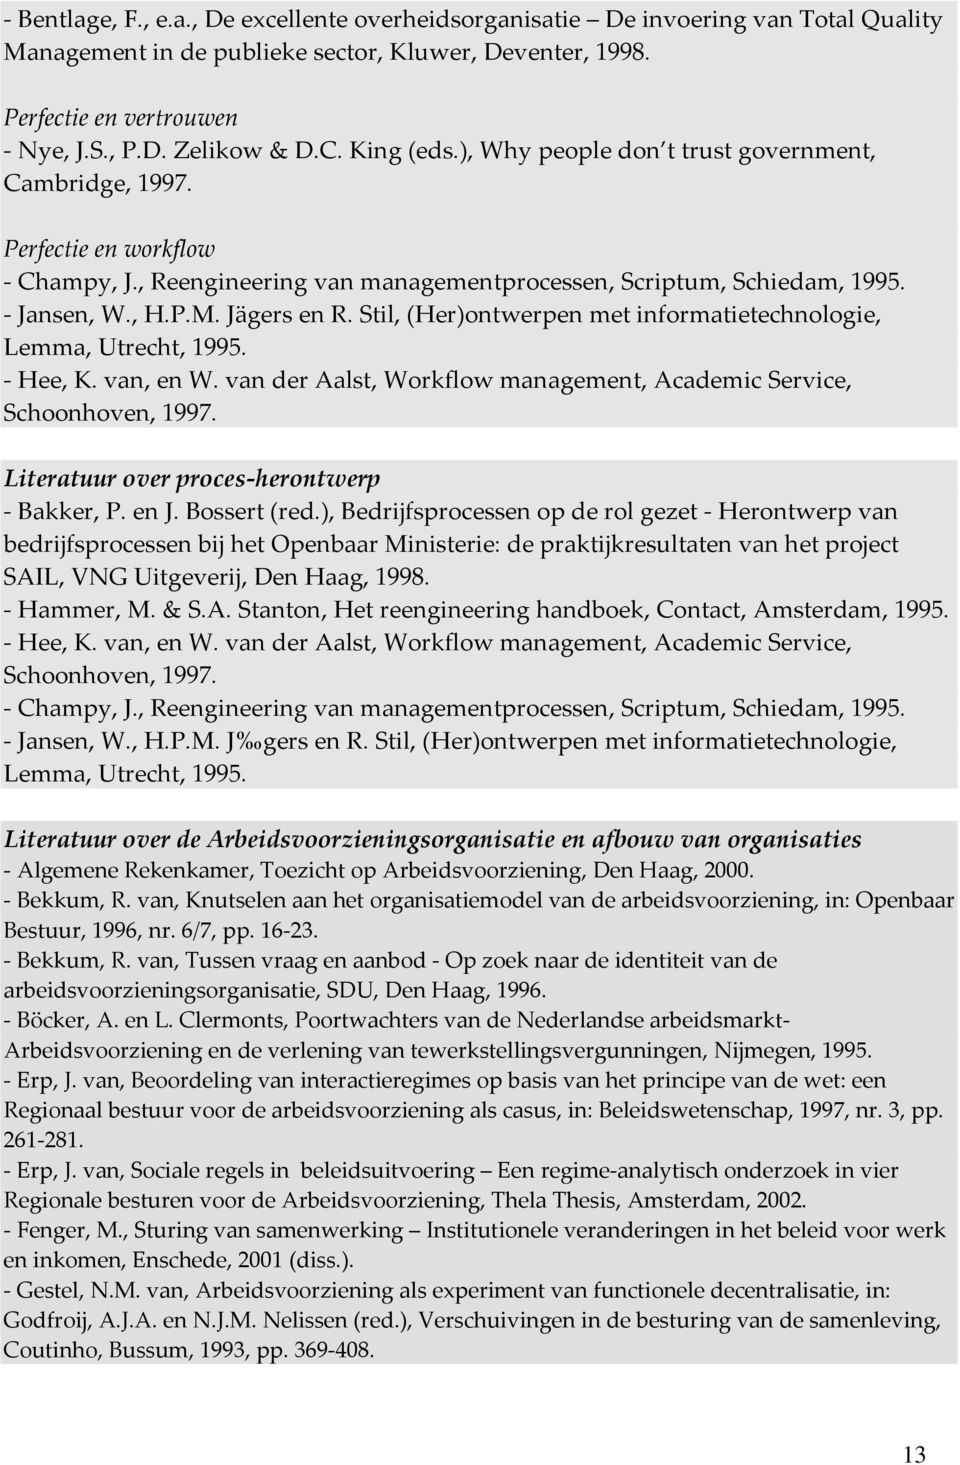 Jägers en R. Stil, (Her)ontwerpen met informatietechnologie, Lemma, Utrecht, 1995. - Hee, K. van, en W. van der Aalst, Workflow management, Academic Service, Schoonhoven, 1997.